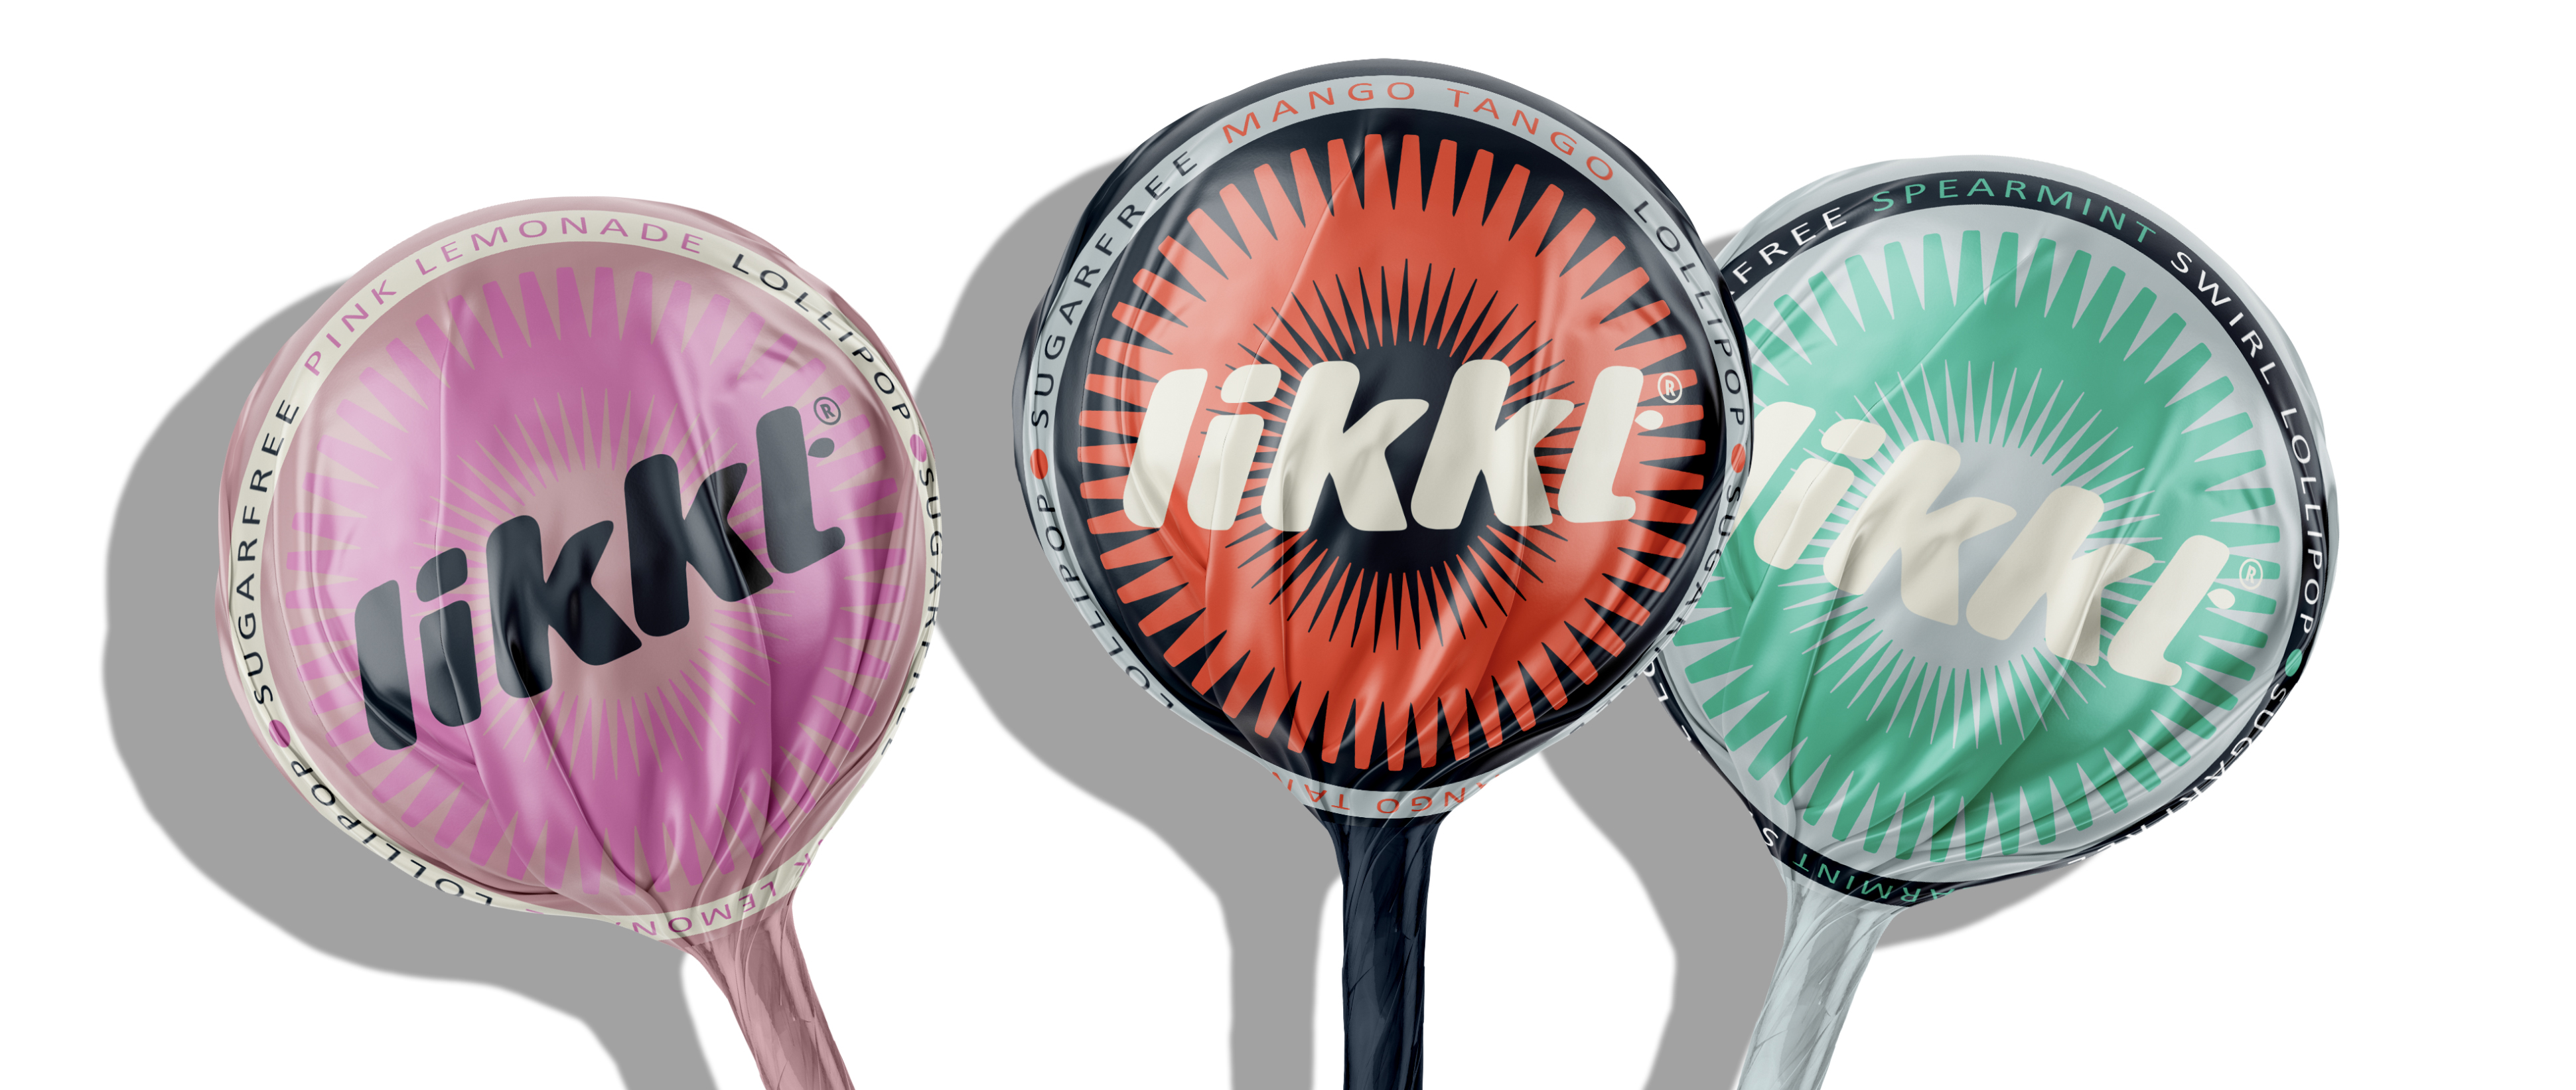 Get em Likkt! A New Lollipop Range for the Health Focused Adult Market